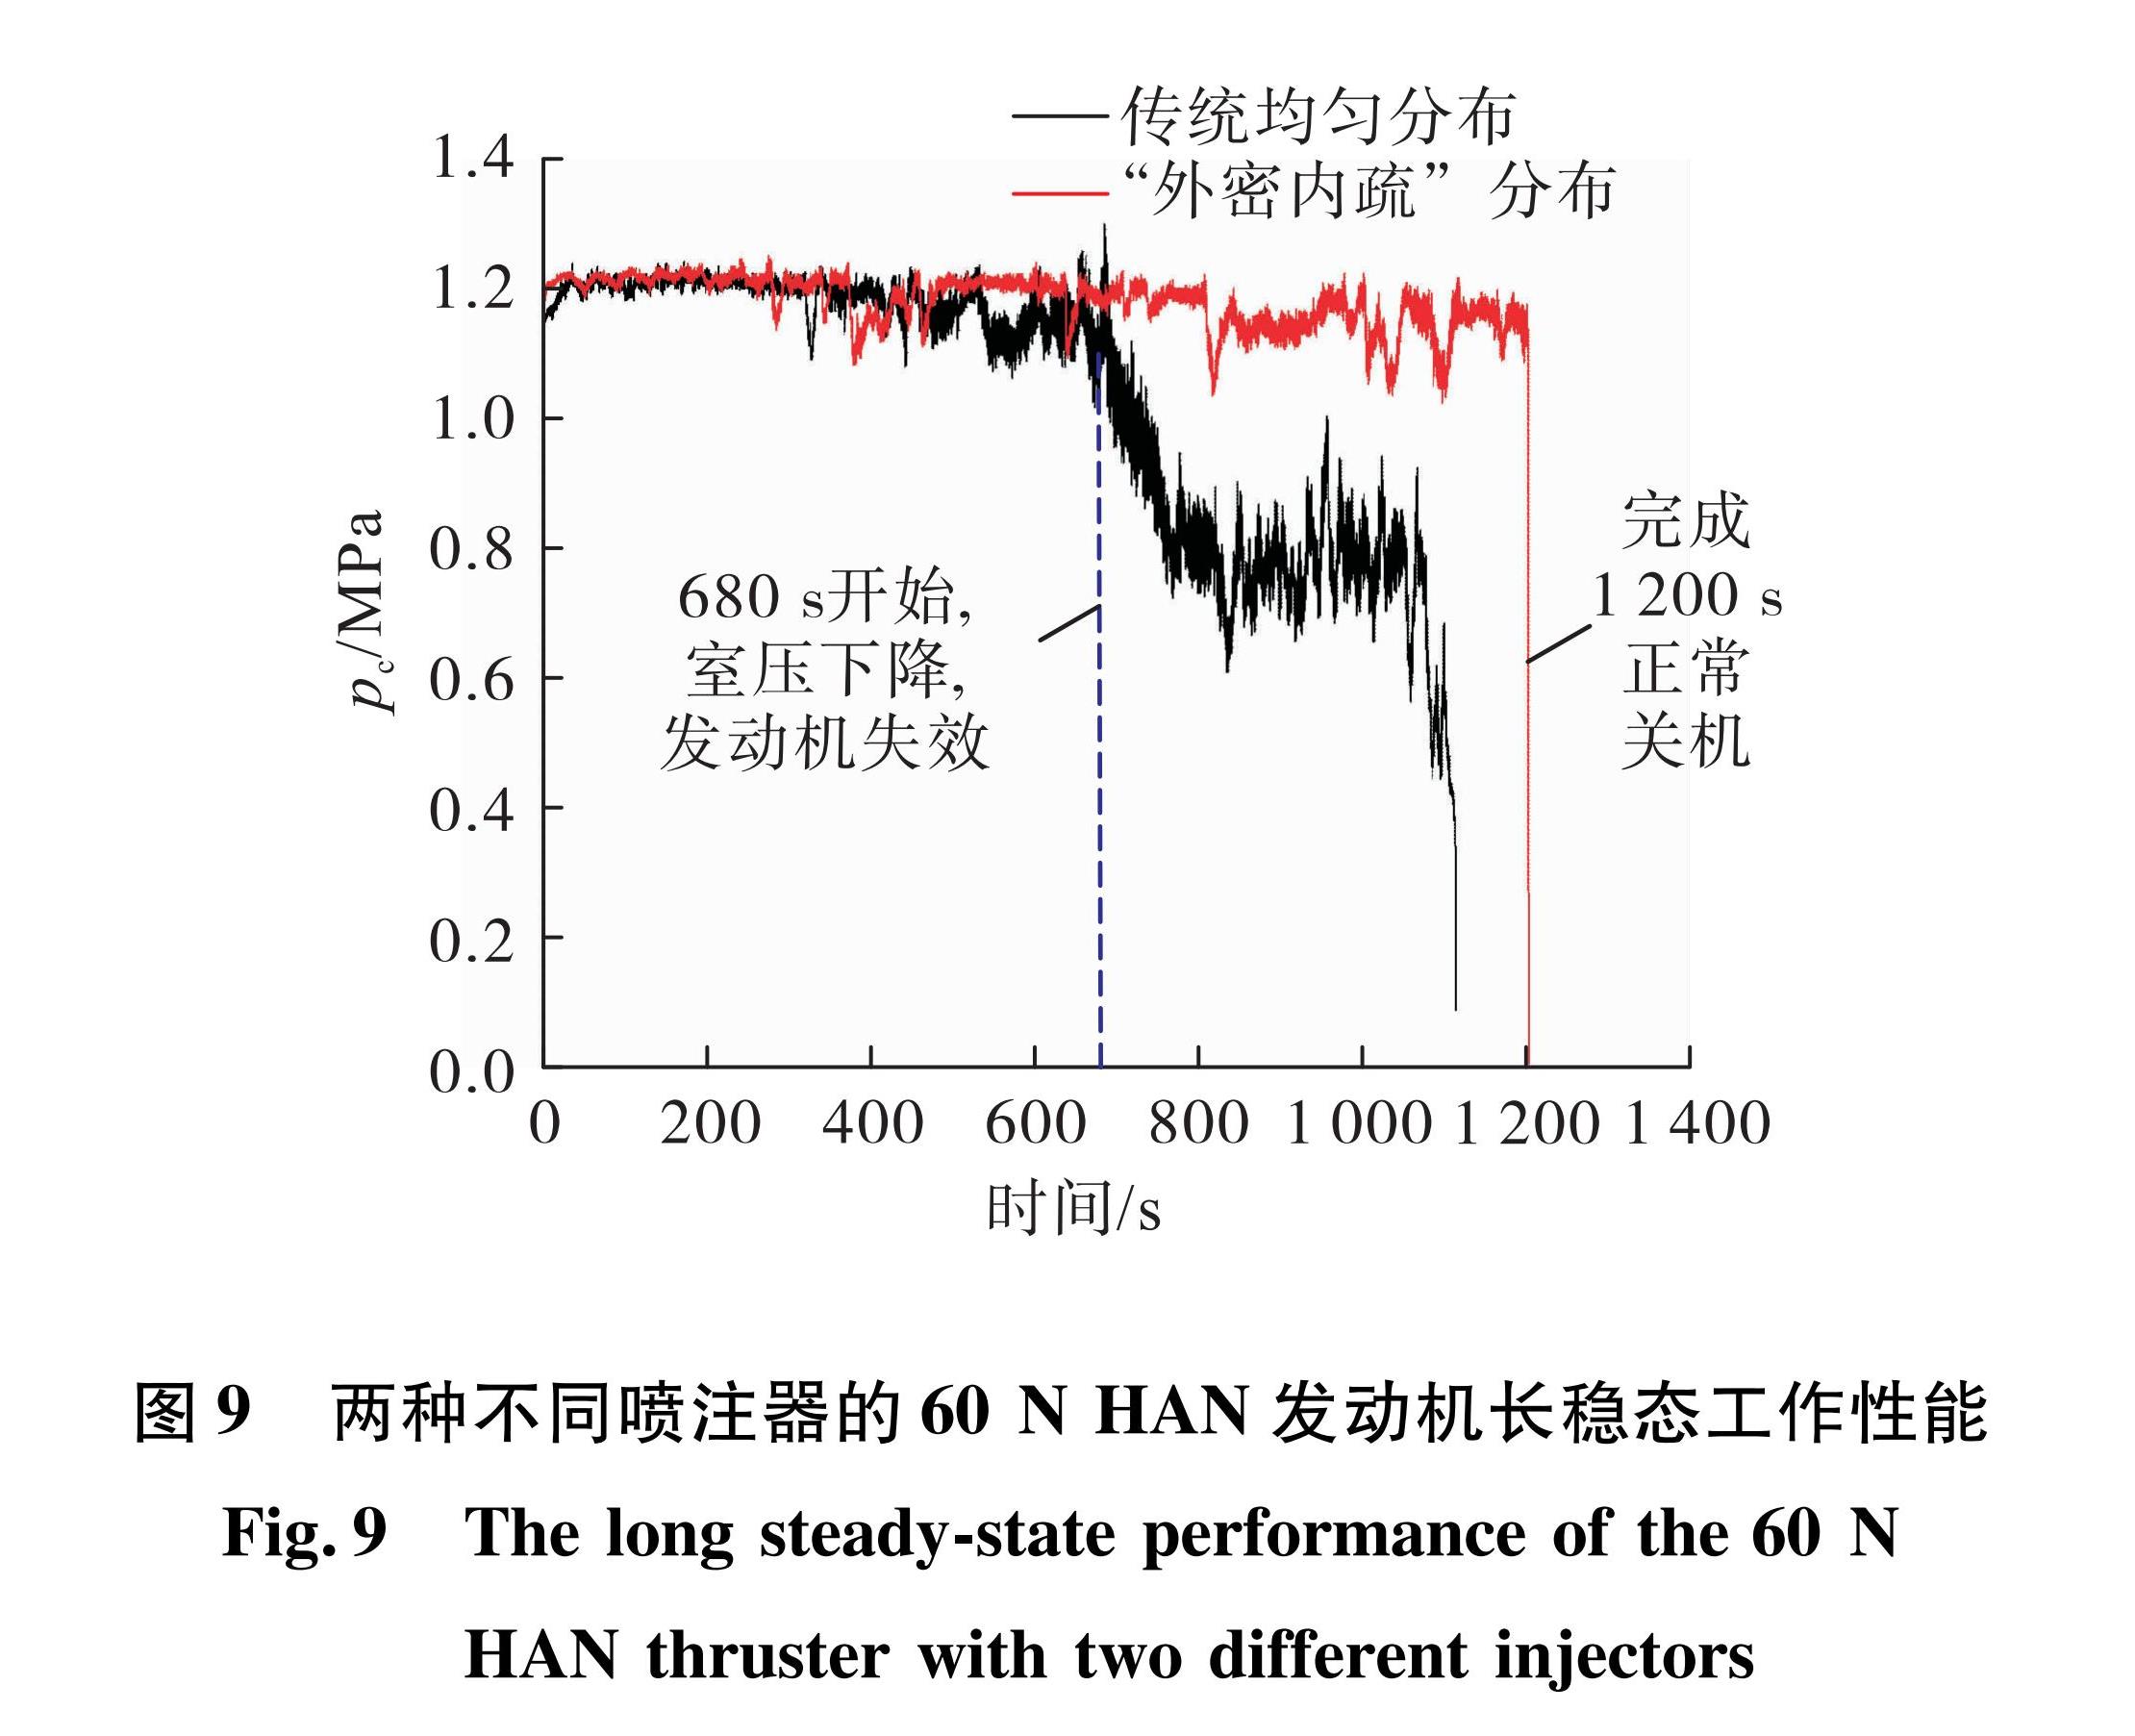 图9 两种不同喷注器的60 N HAN发动机长稳态工作性能<br/>Fig.9 The long steady-state performance of the 60 N HAN thruster with two different injectors